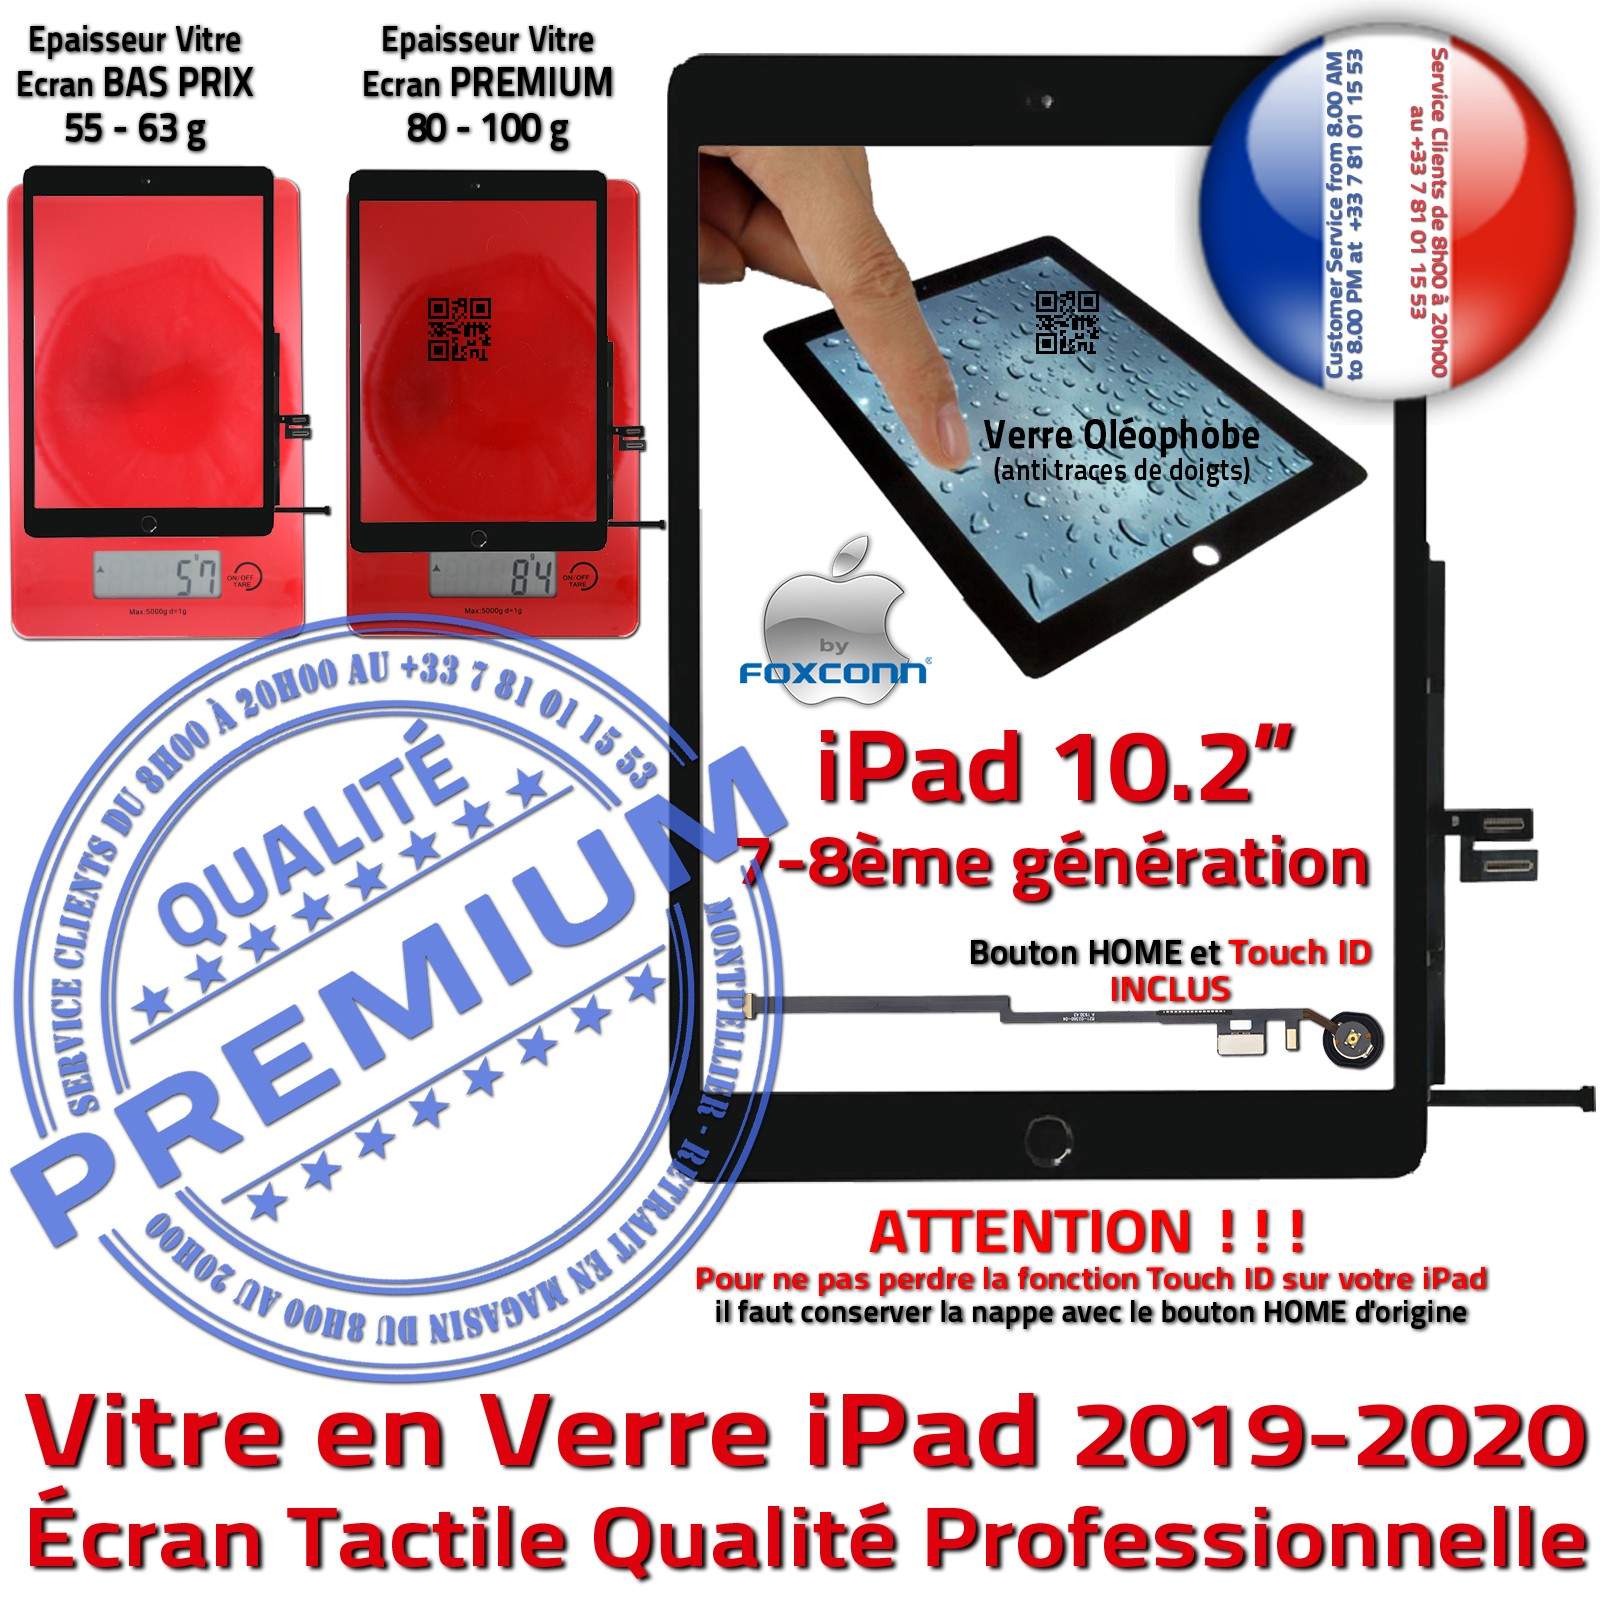 KIT Réparation iPad 2020 A2270 Vitre Tactile Noire PREMIUM Qualité Verre  Oléophobe Adhésif Precollé Bouton HOME Outils Démontage